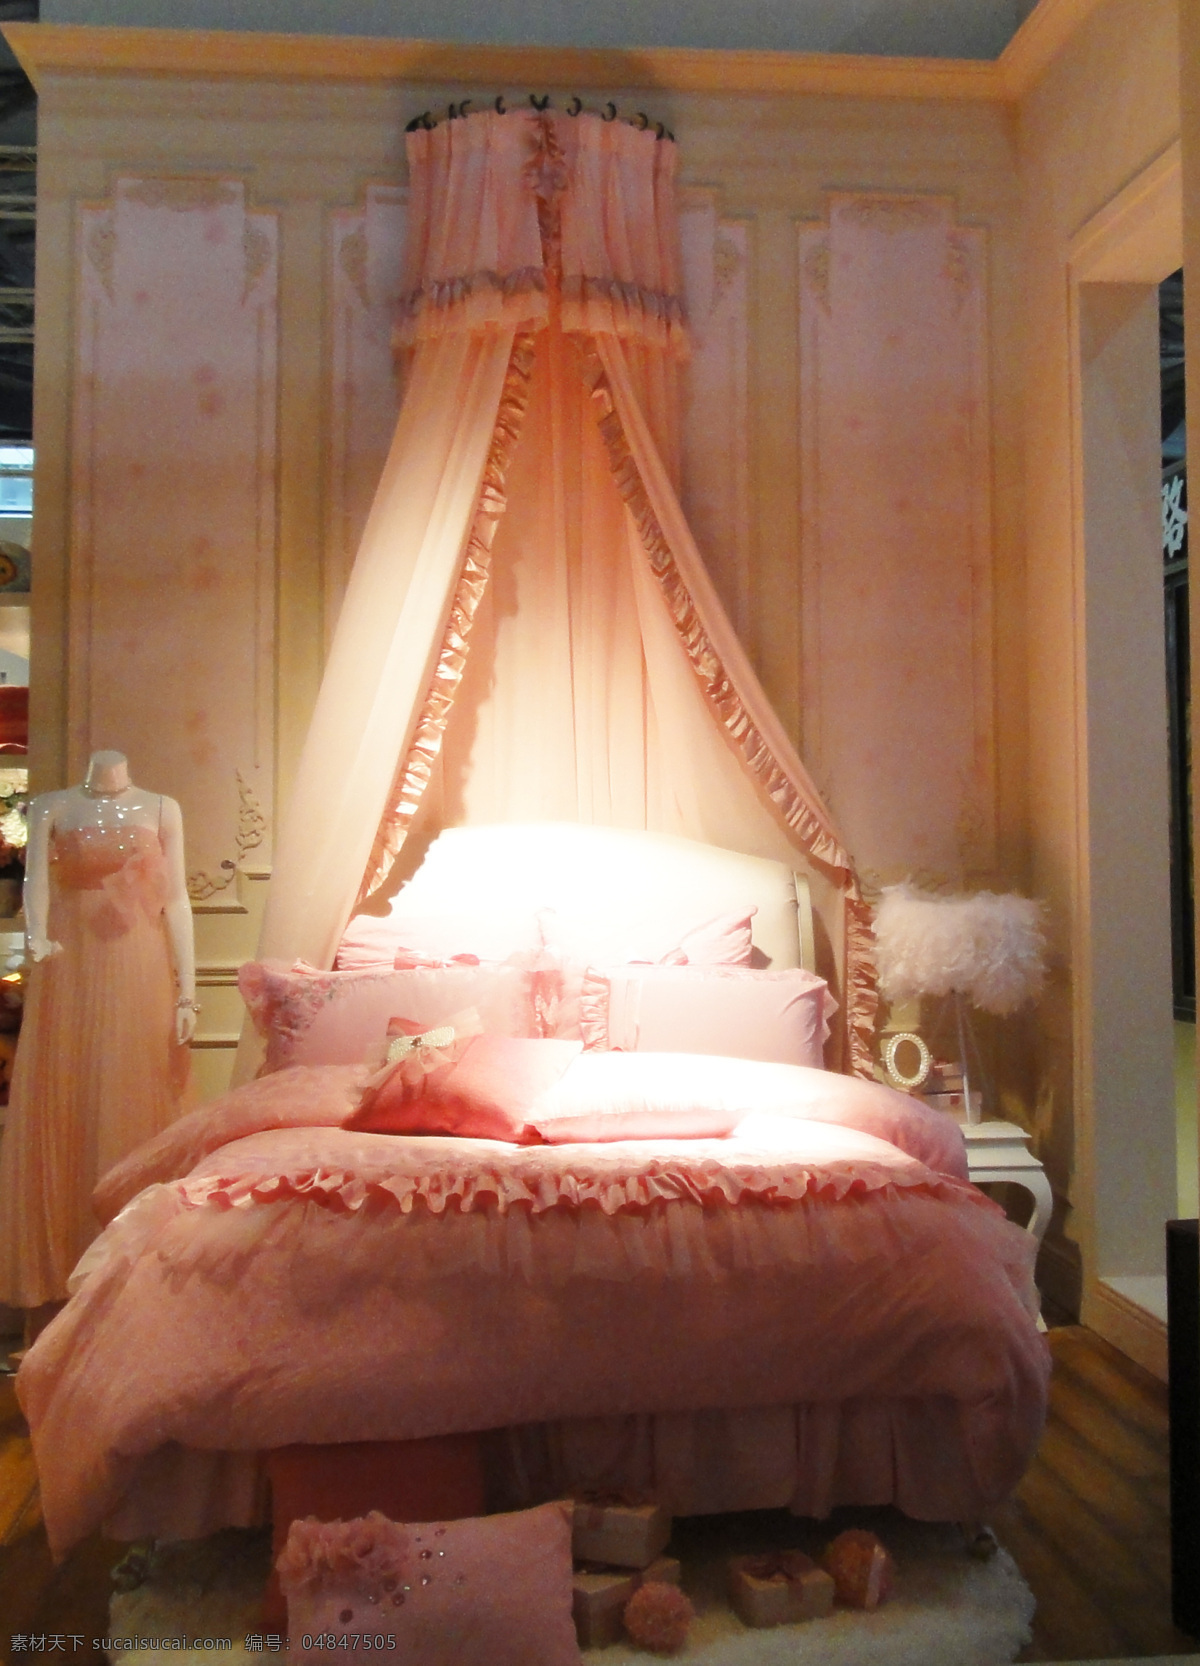 粉色 公主 房间 公主房 田园风格 床 抱枕 礼服 要板 蚊帐 欧式风格 室内设计 环境家居